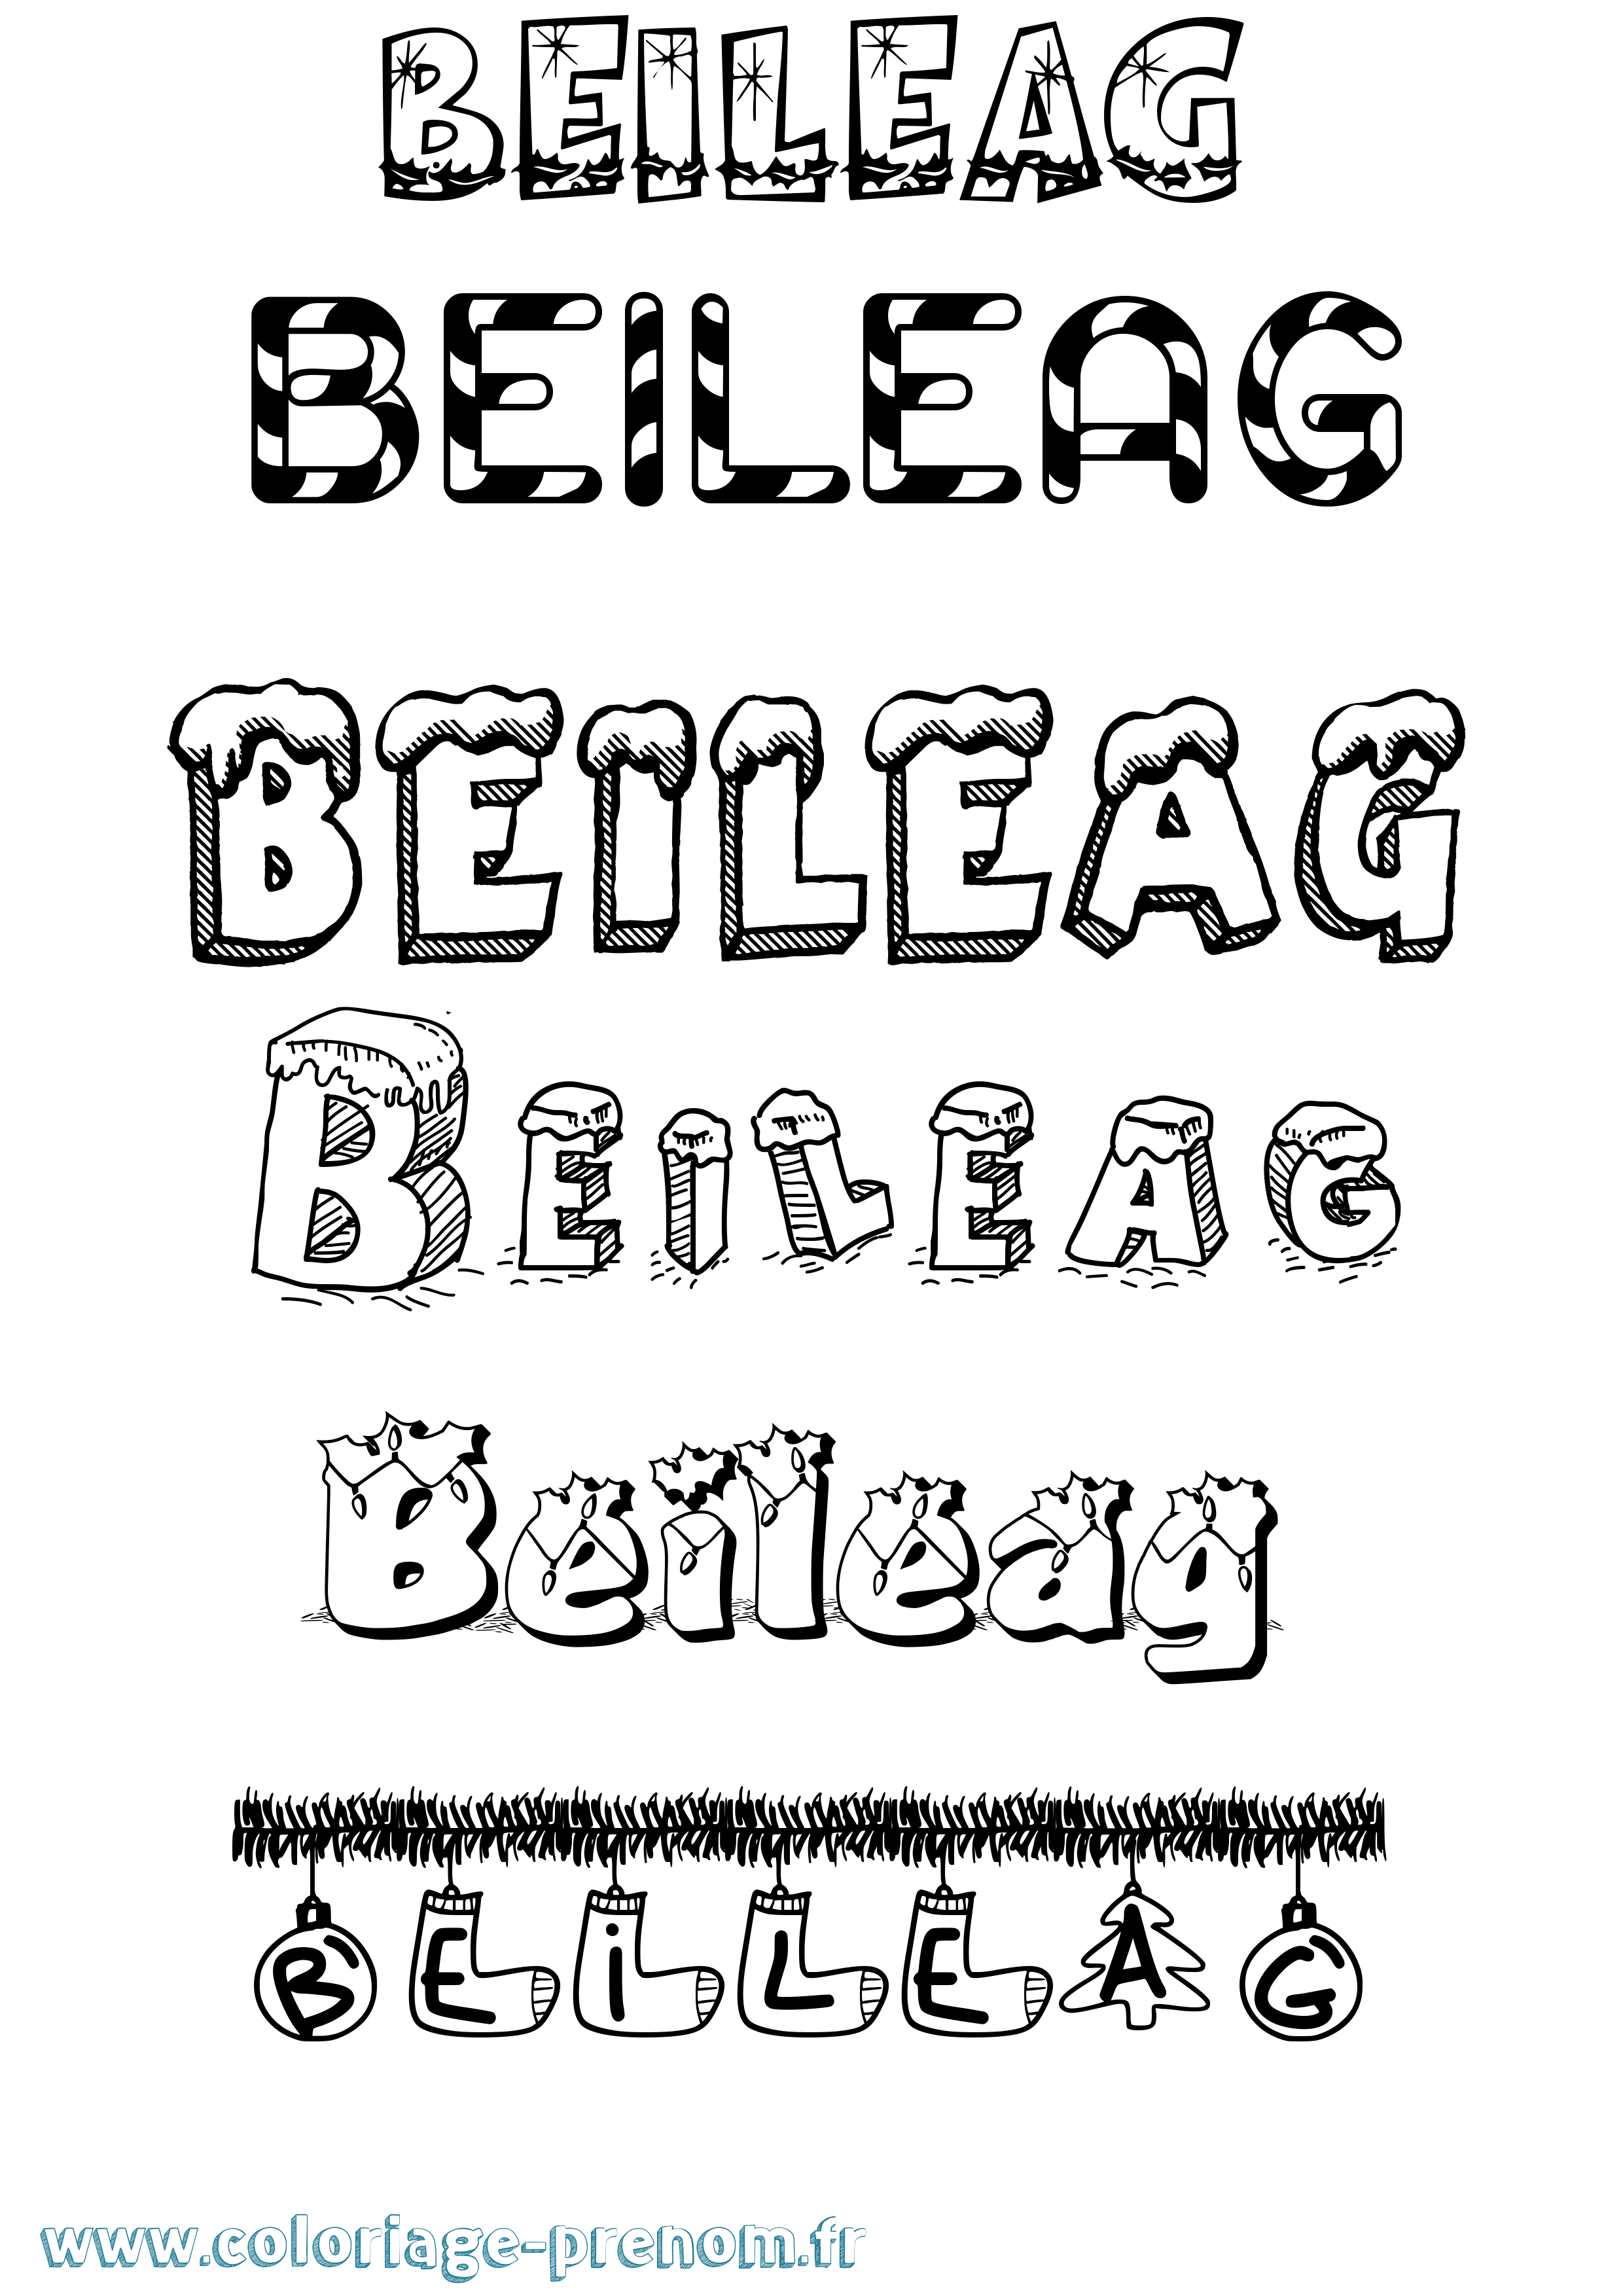 Coloriage prénom Beileag Noël